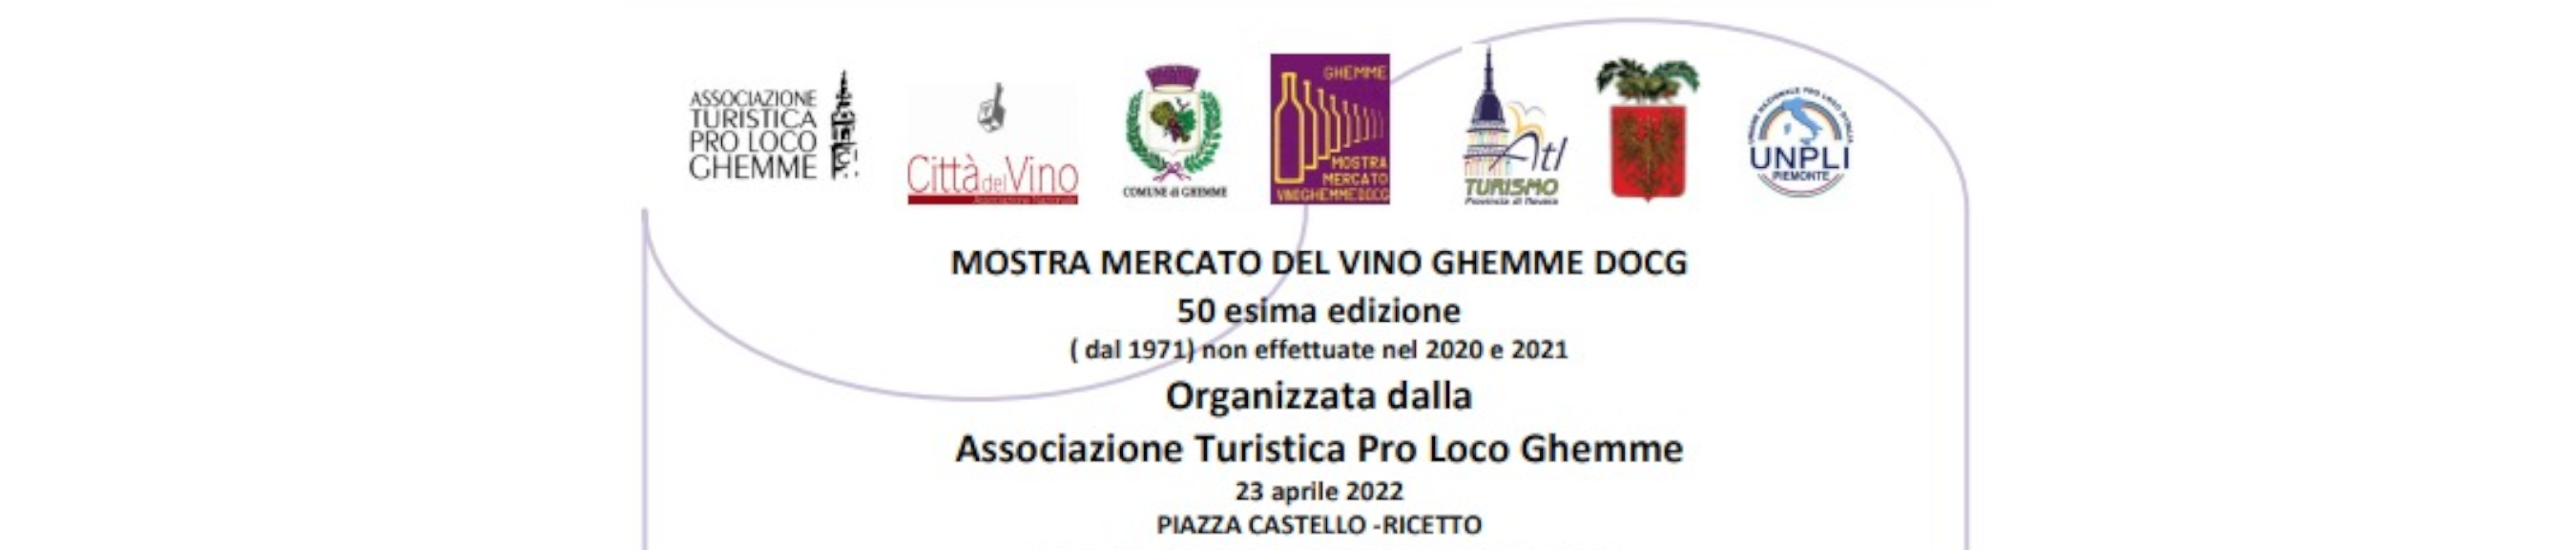 Il ruolo delle Pro Loco nel Turismo del Vino